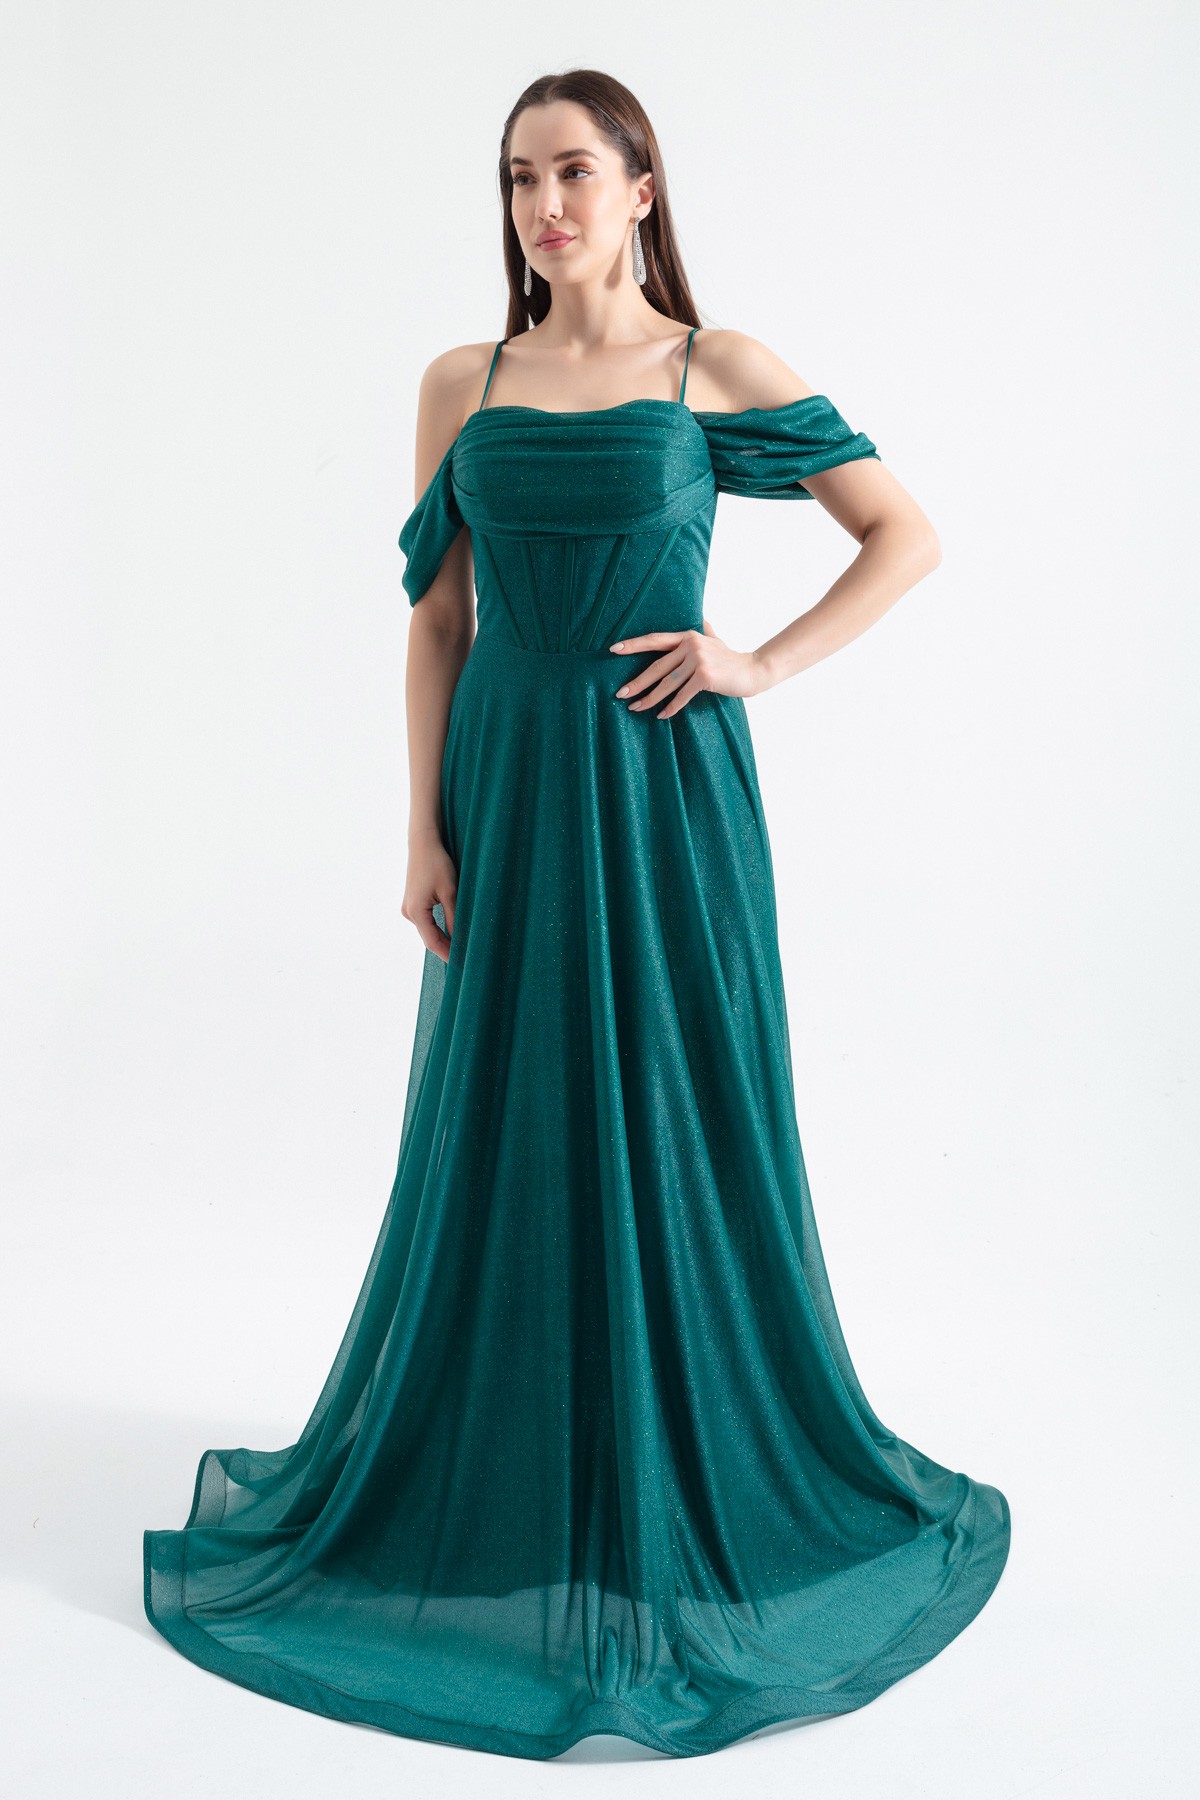 Kadın Askılı Simli Uzun Kloş Abiye Elbise - Zümrüt Yeşili